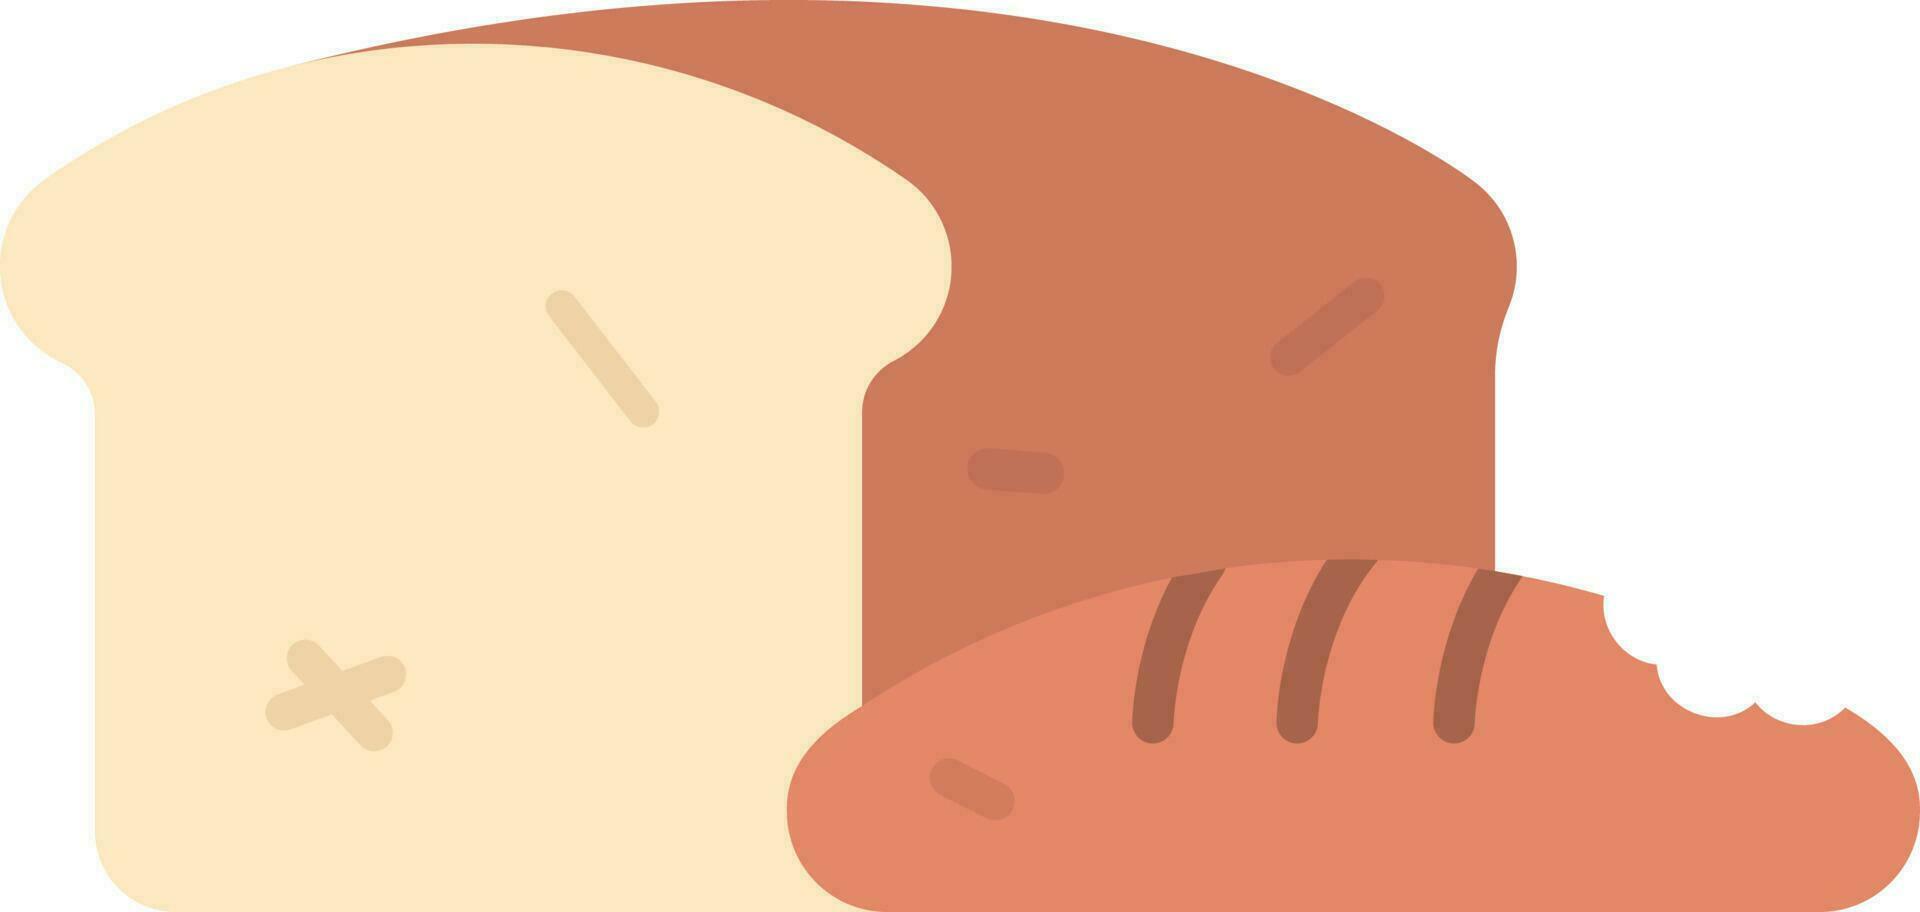 Bread icon vector image.